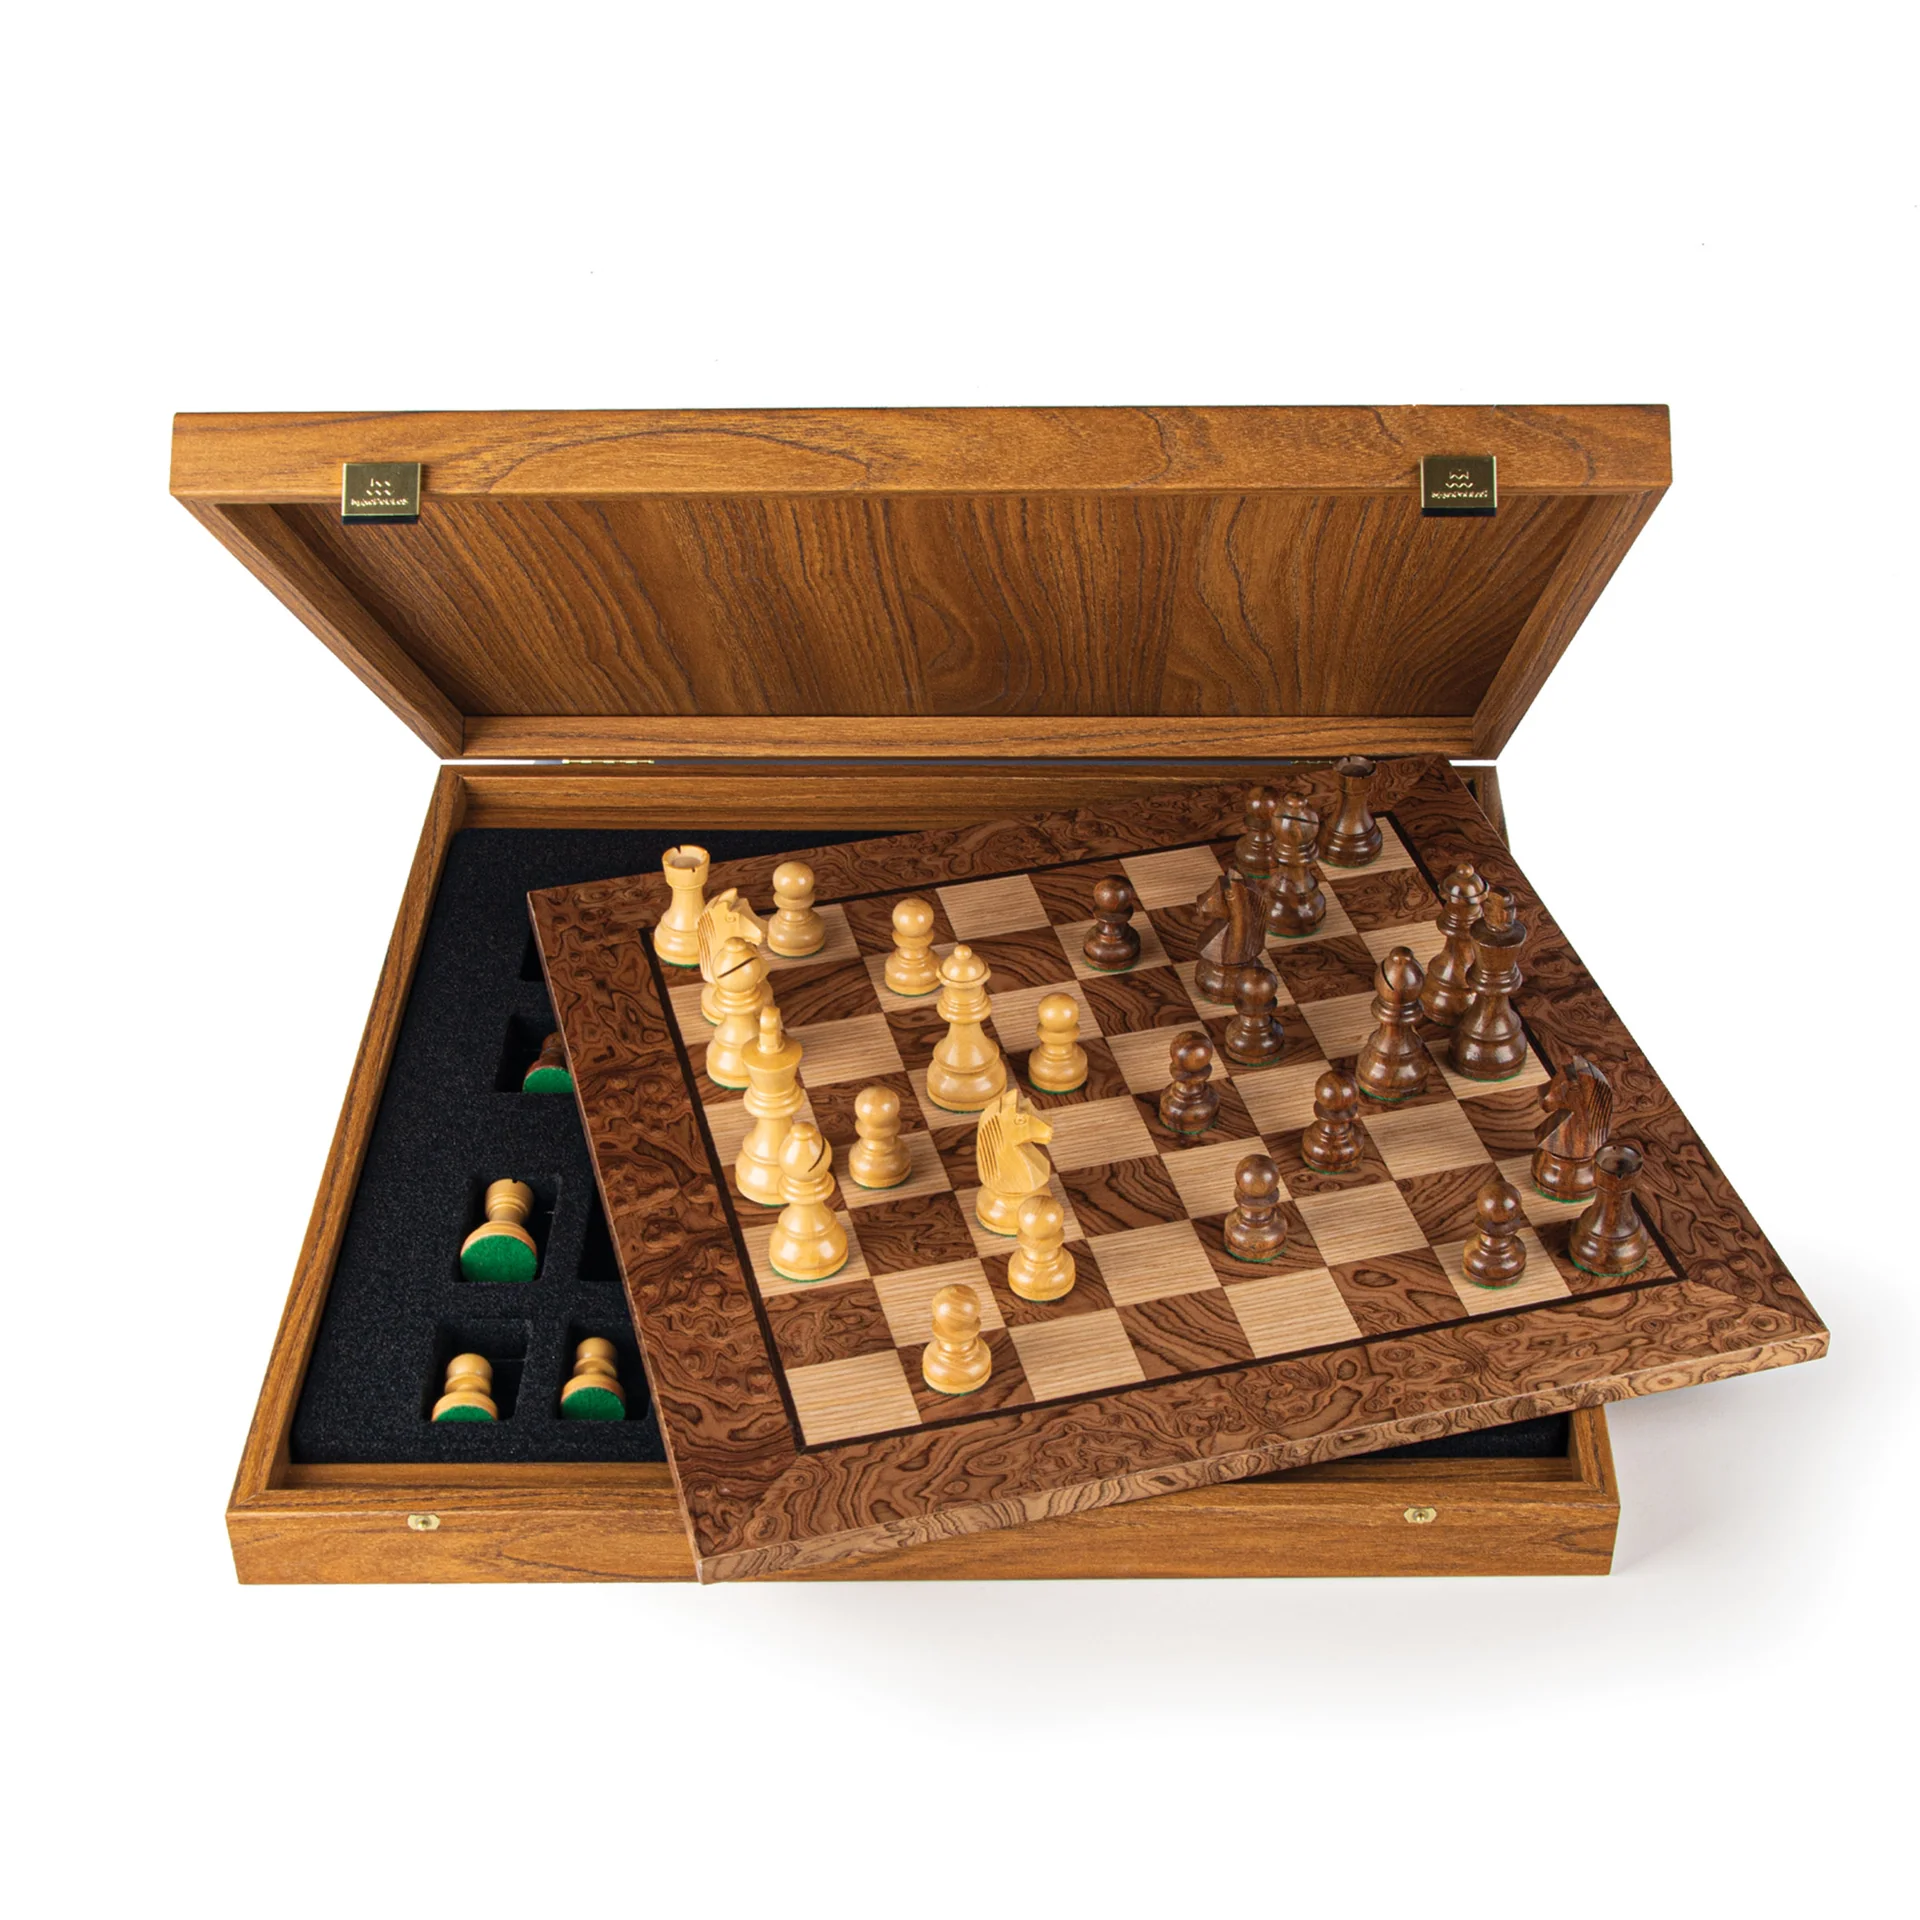 Christian Edelsteen ontrouw Handgemaakte houten schaakbord met opbergsysteem - Luxe uitgave - Schaakspel .nl